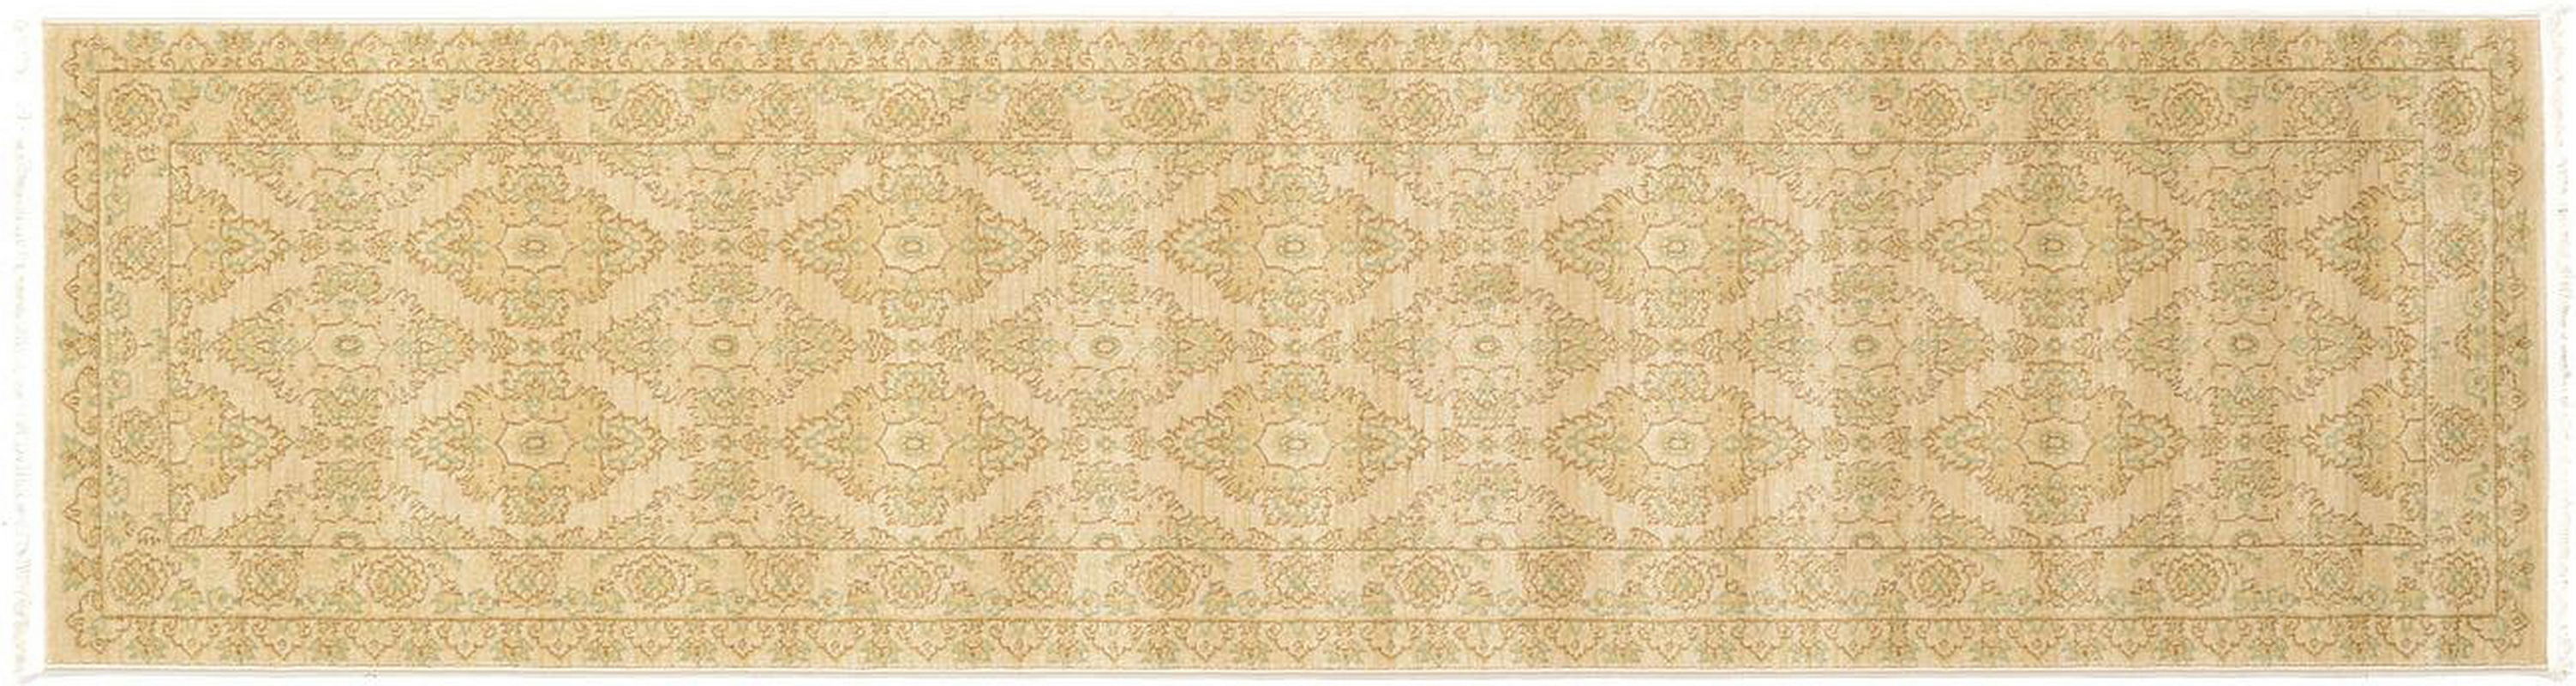 古典经典地毯ID9662